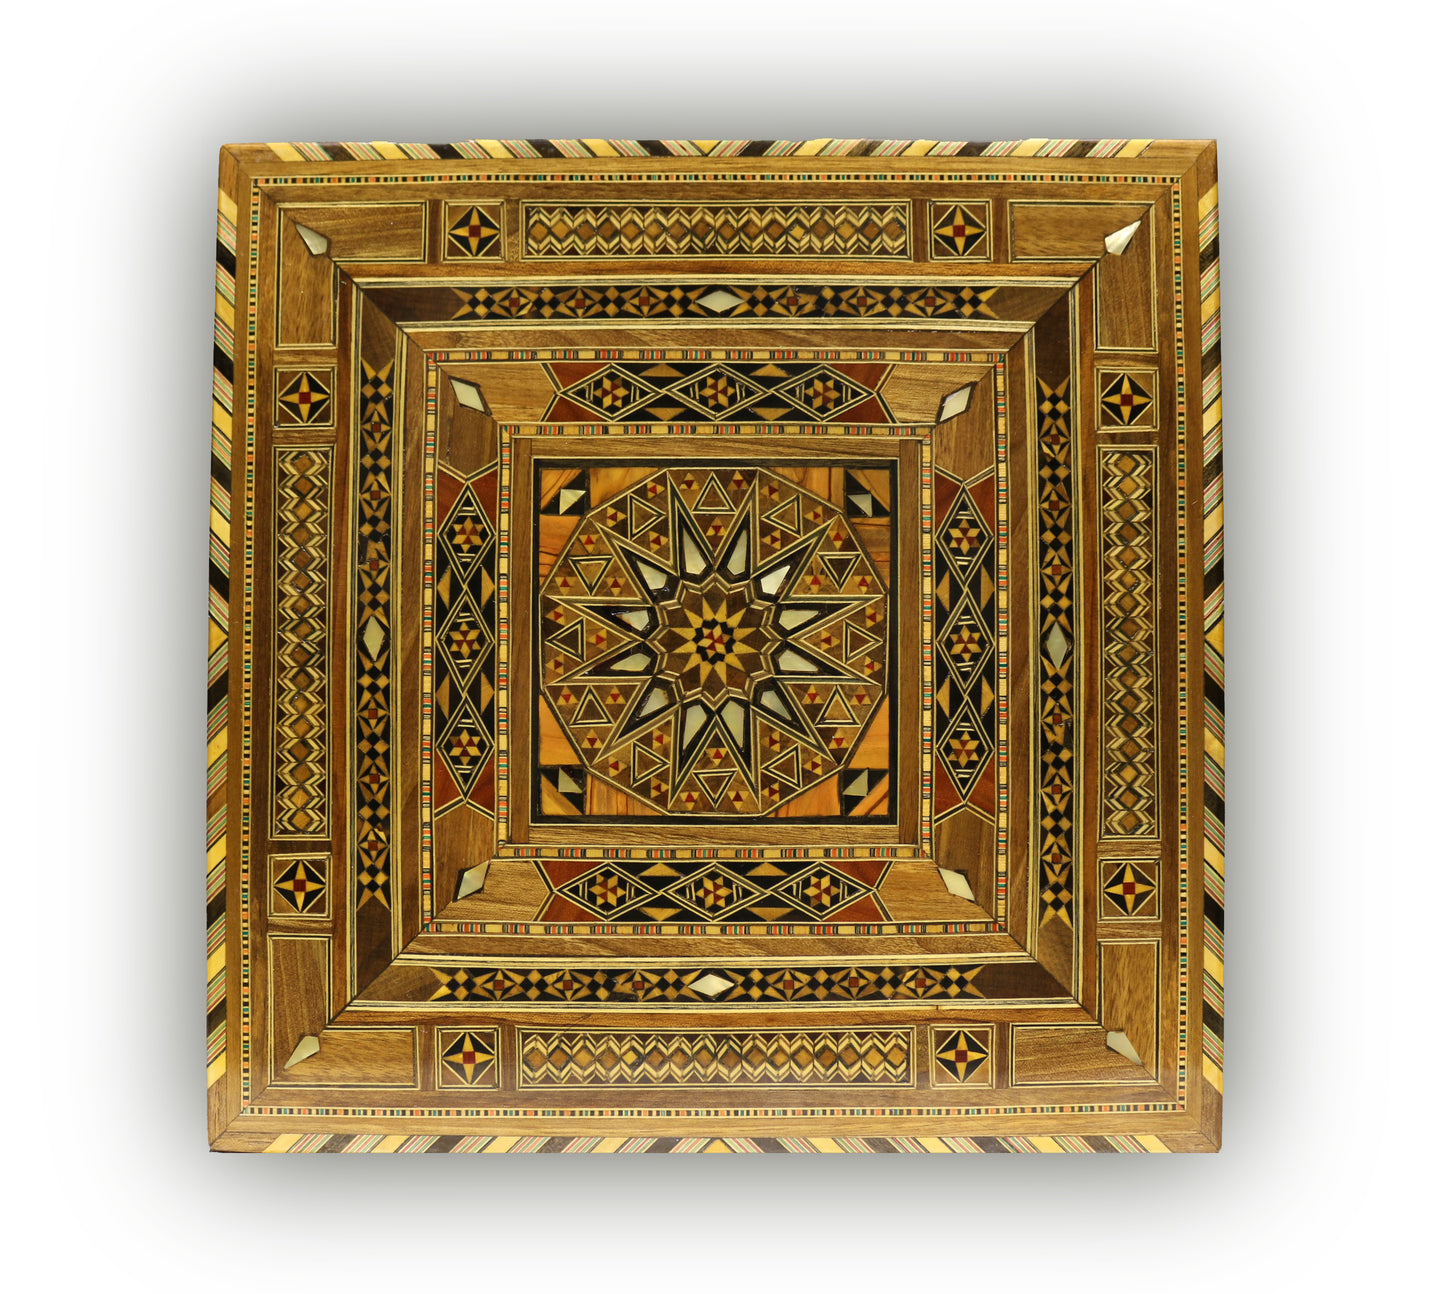 Neu Holz Mosaik Schatulle,Box,Kästchen, Damaskunst K 2-2-31 - Damaskunst - [variant_title]-[option1]